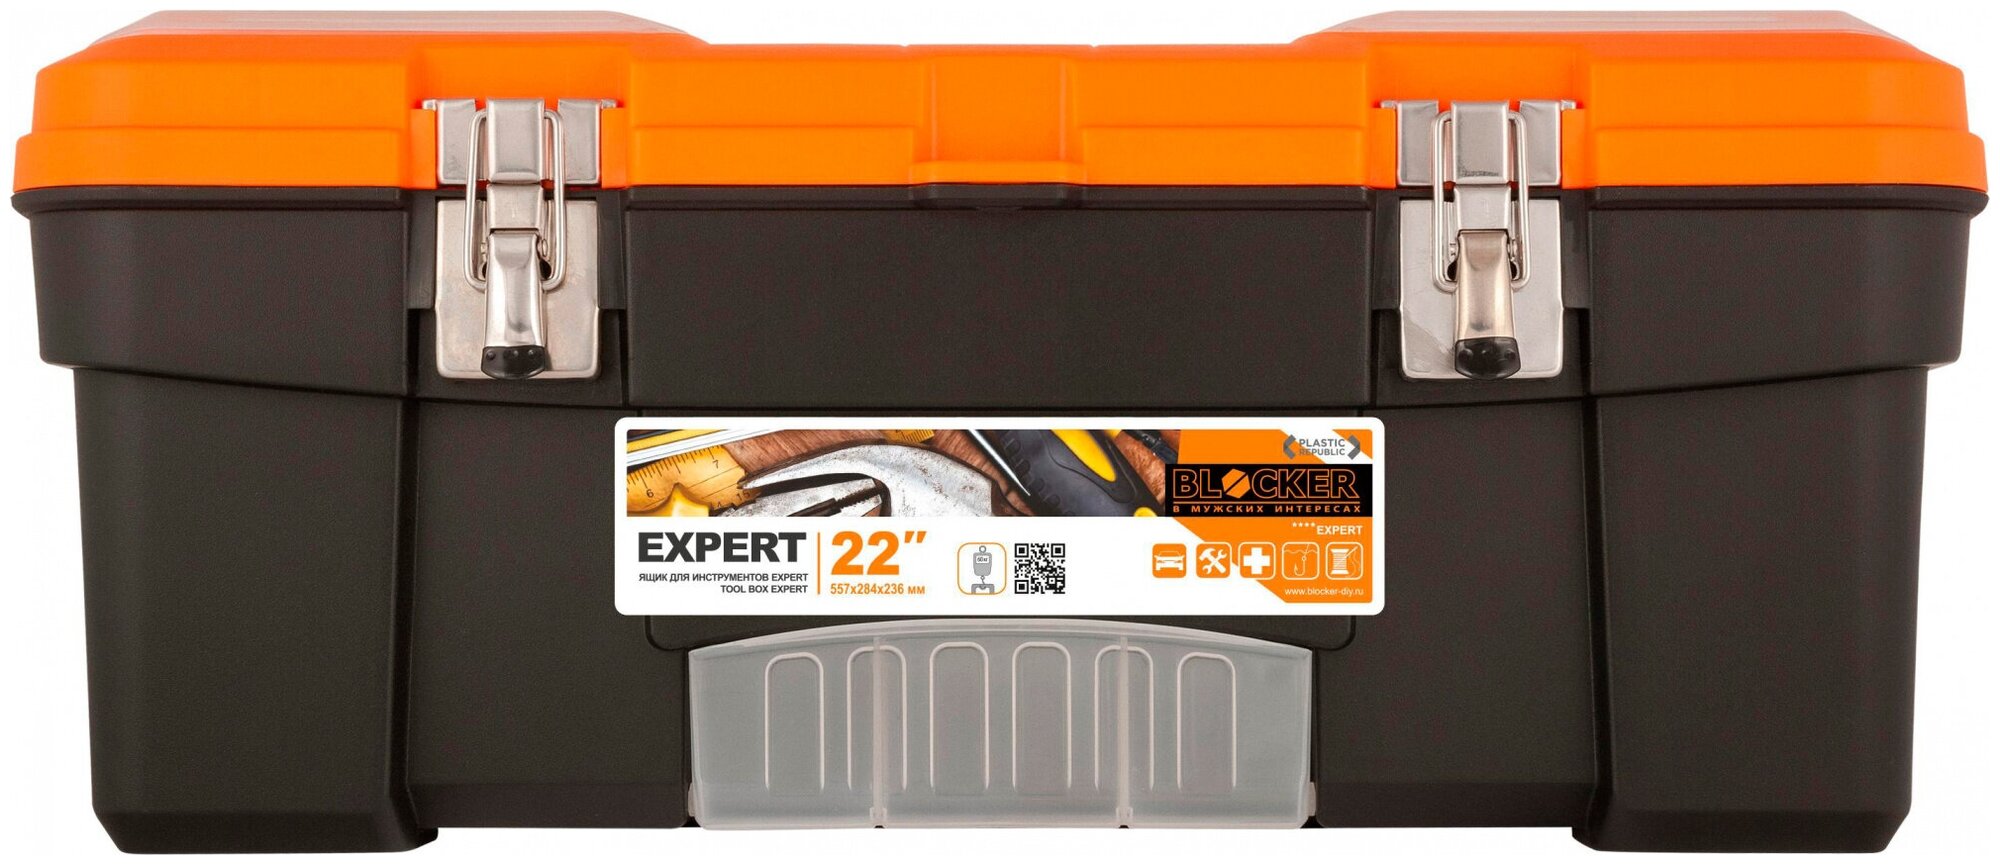 Ящик для инструментов Blocker Expert, 55,7 x 28,4 x 23,6 см, черный/оранжевый